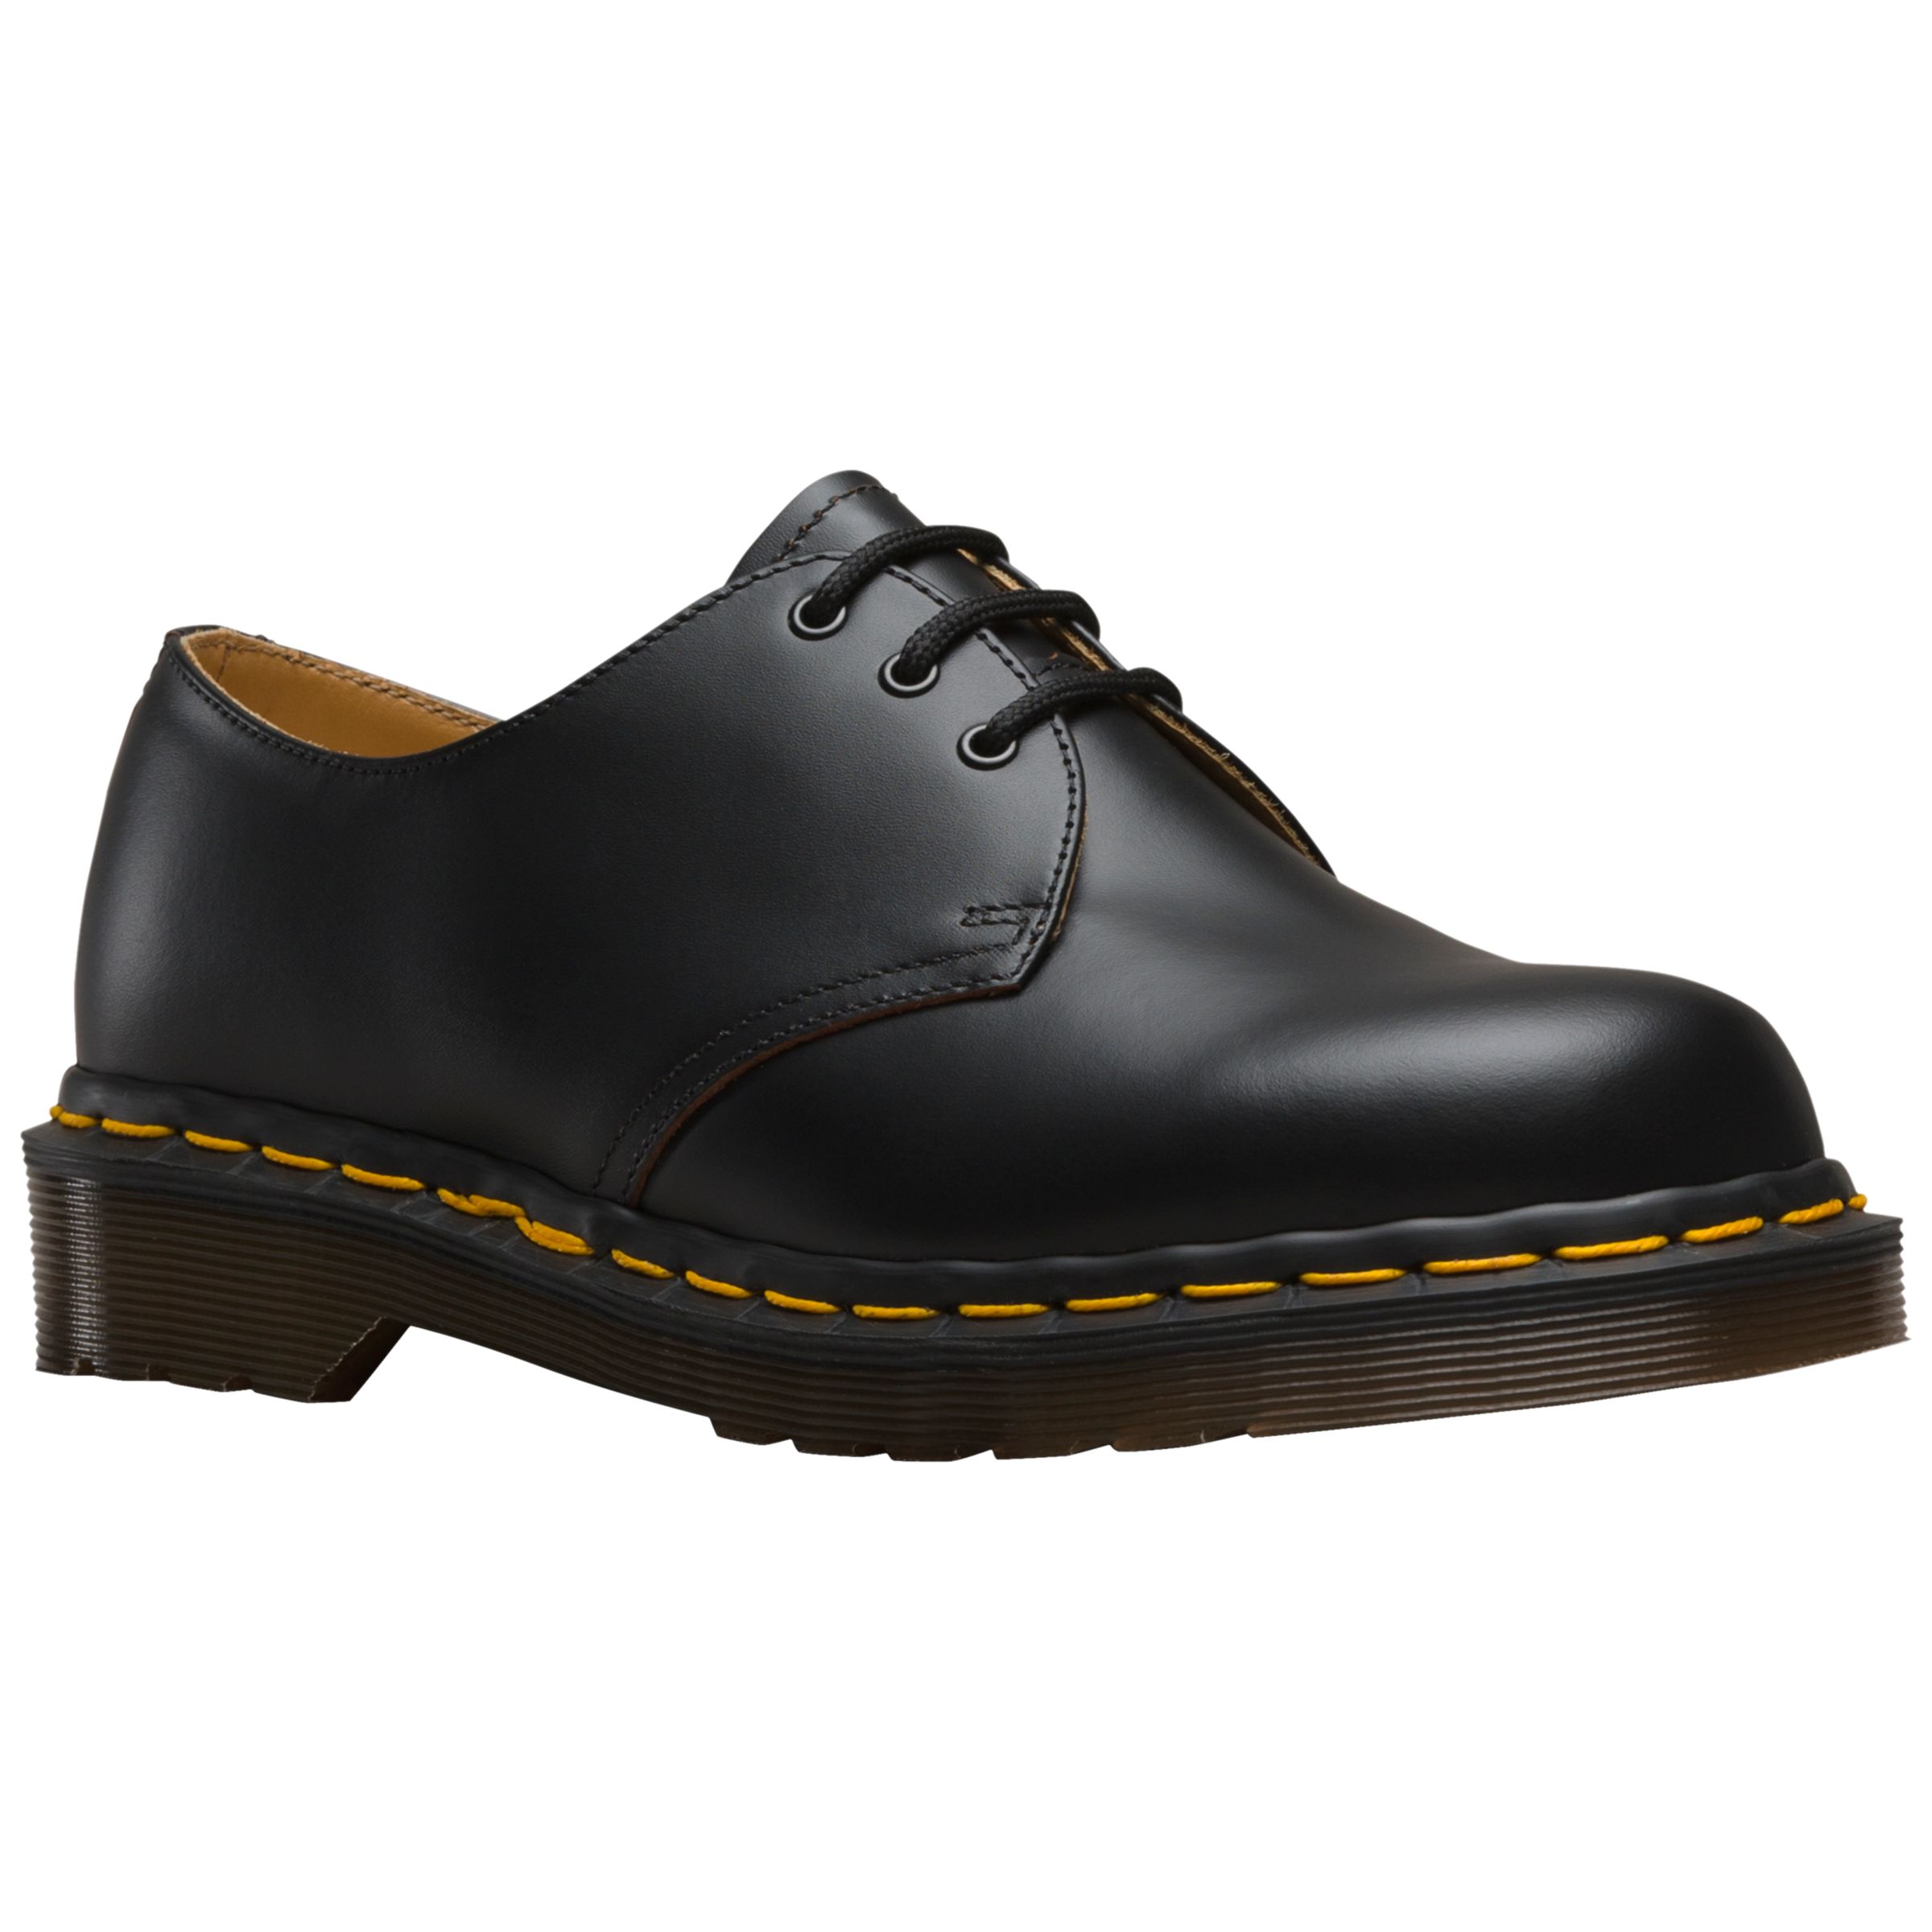 Dr Martens 1461 Vintage Shoe